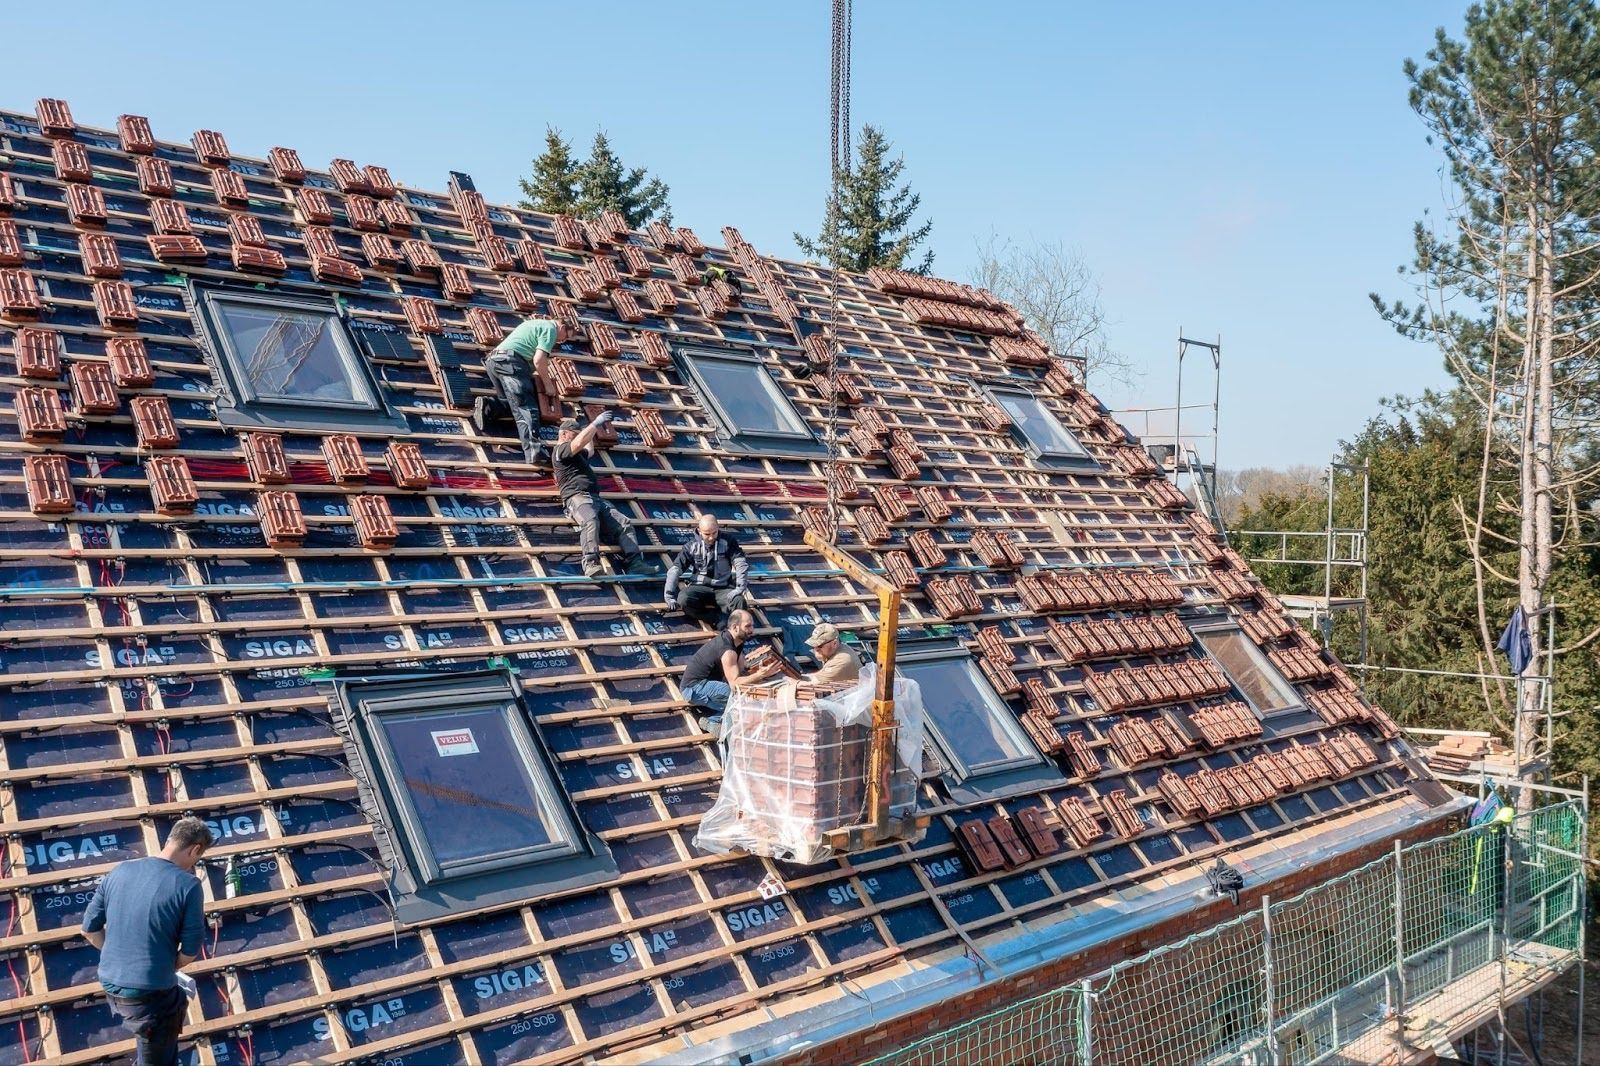 Dachdecker in Aktion auf Dach beim verlegen von Solardachziegel